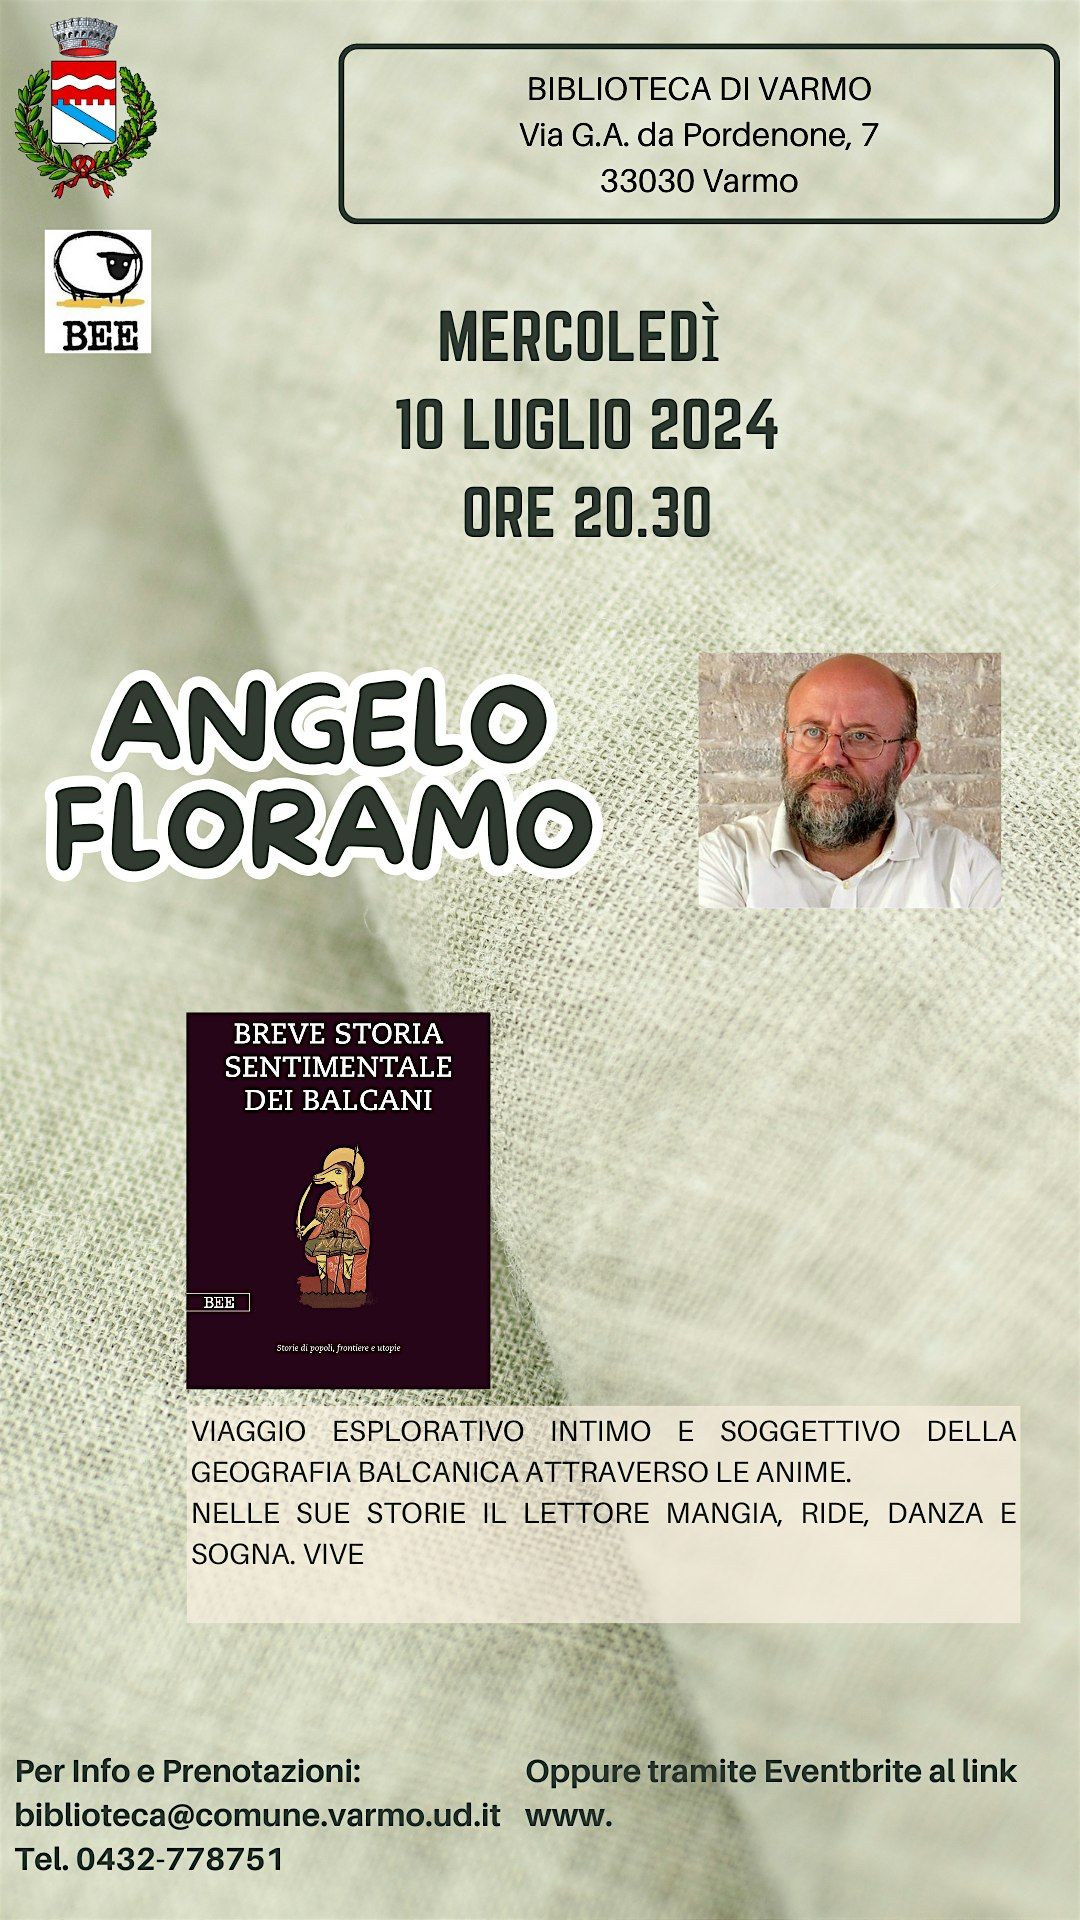 Angelo Floramo - presentazione del libro "Breve storia sentimentale dei Balcani"